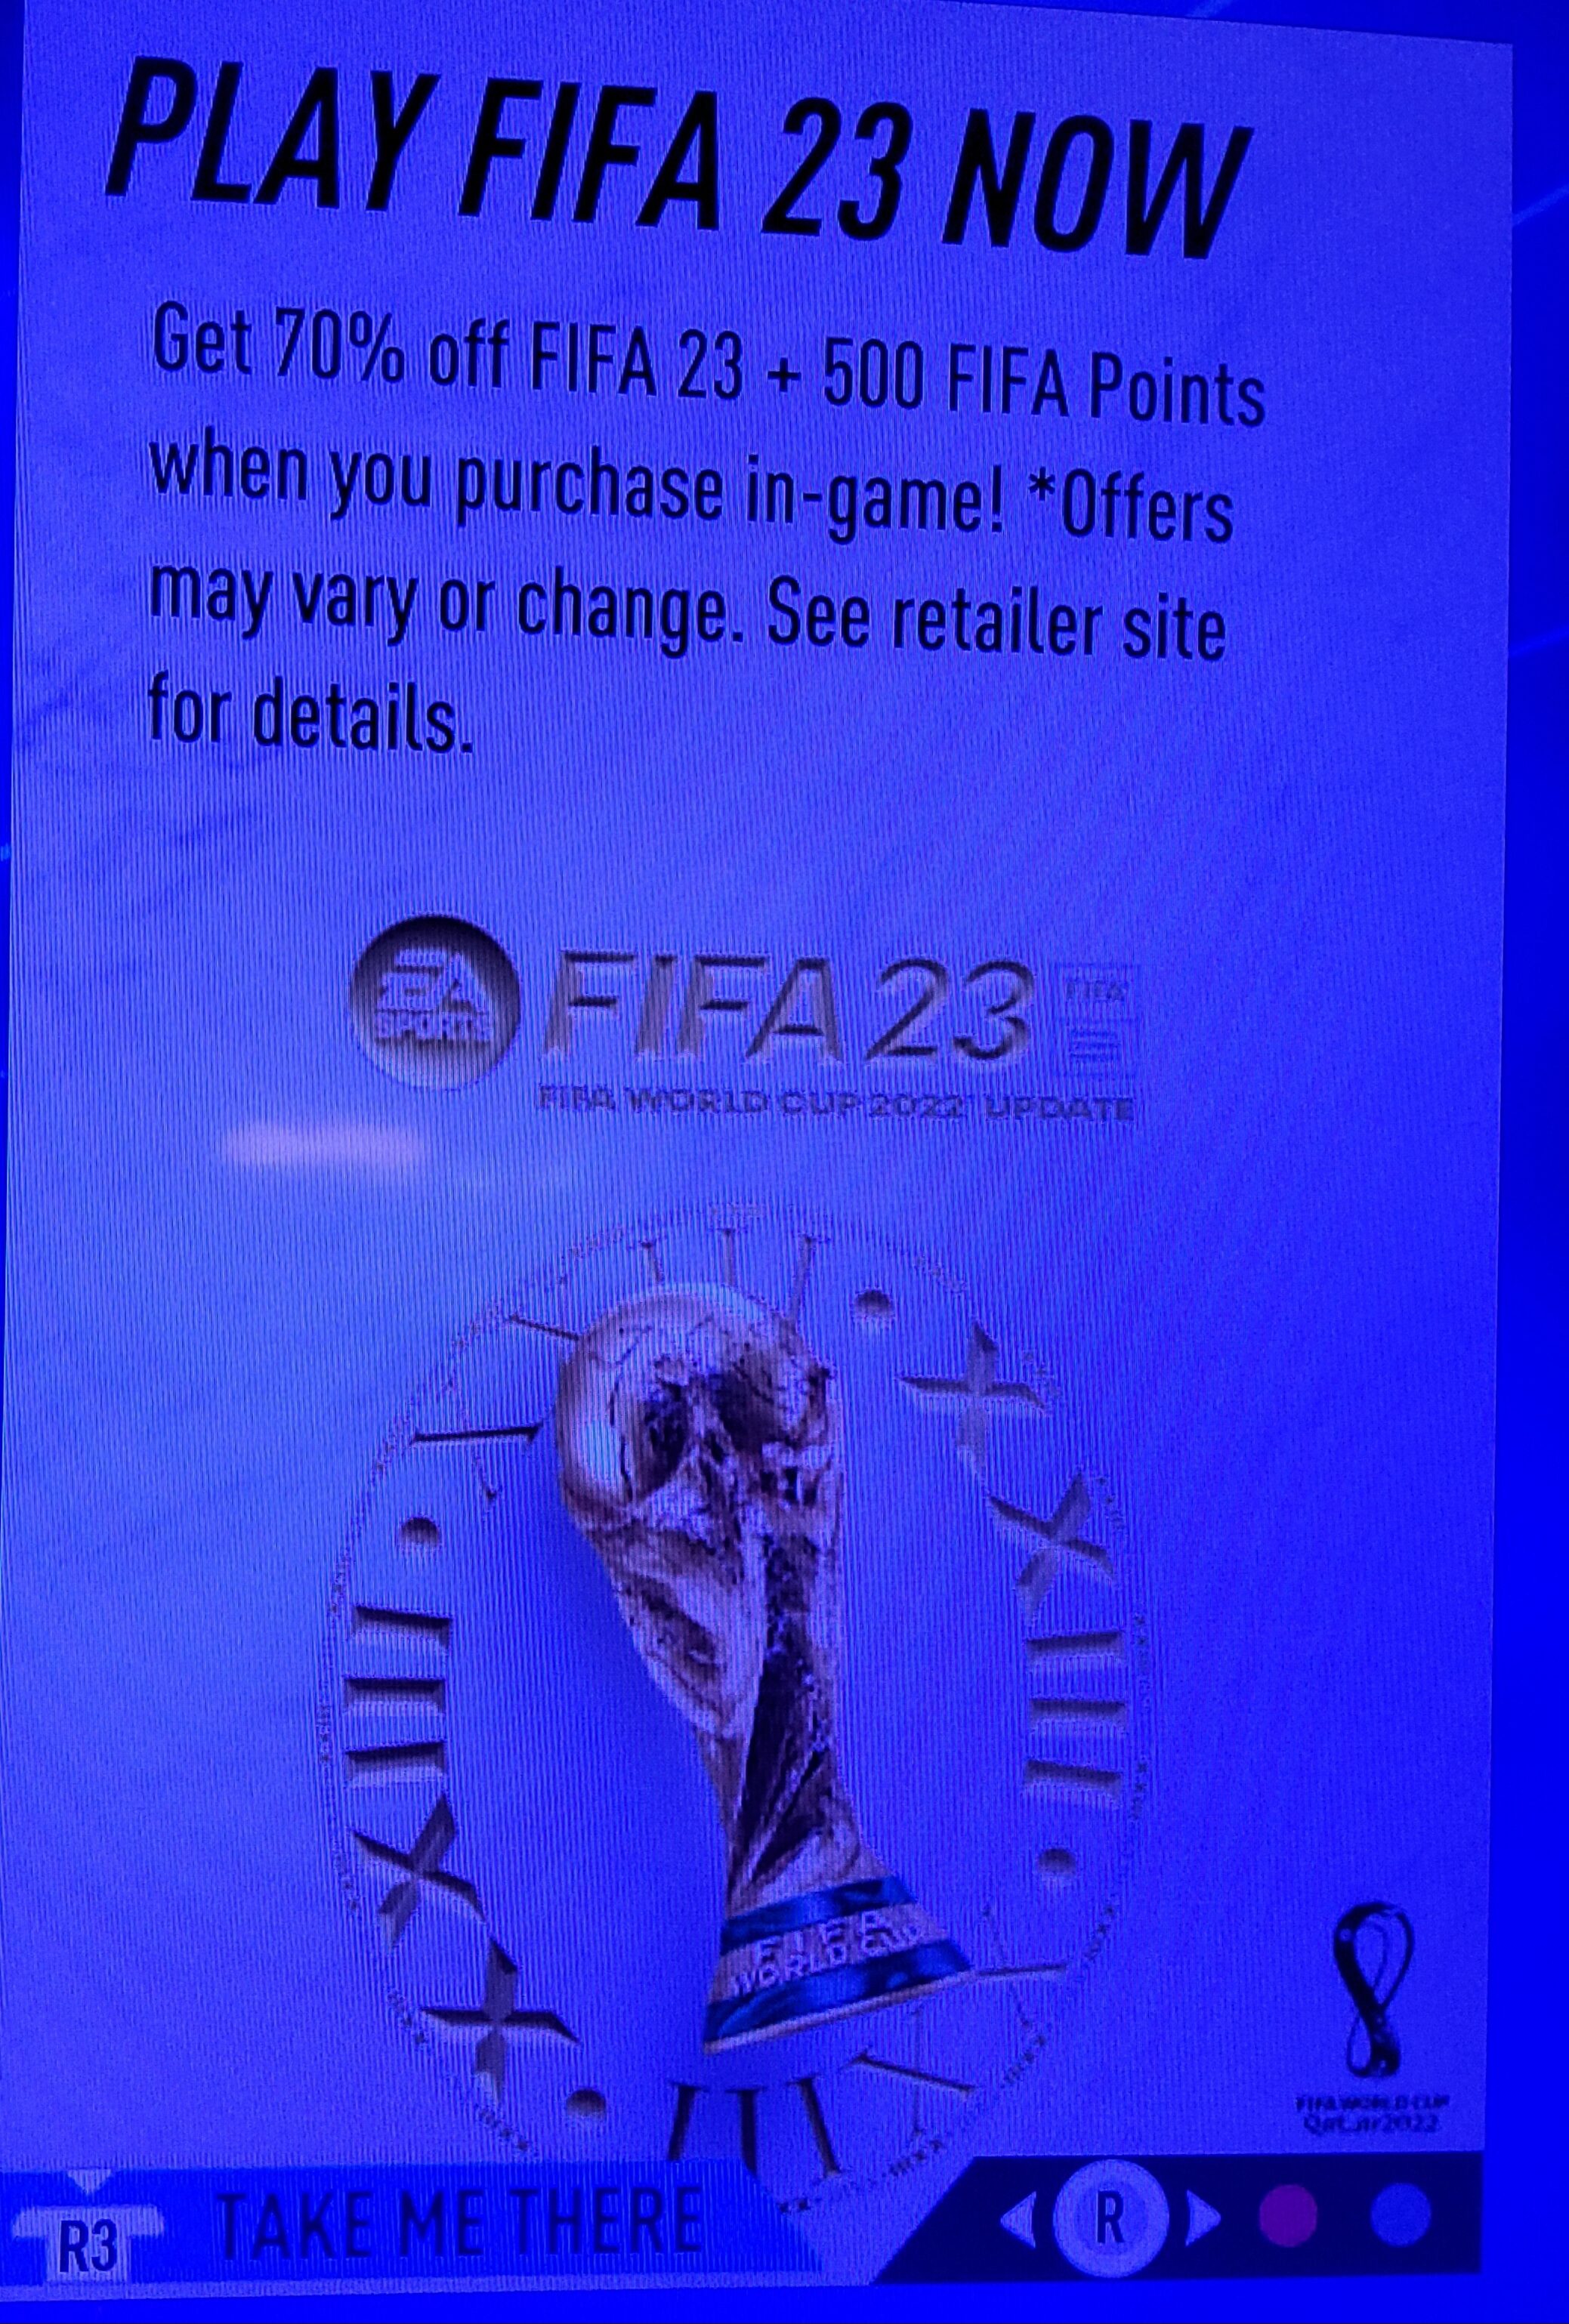 STEAM] FIFA 23, 70% off, $26.99 - RedFlagDeals.com Forums